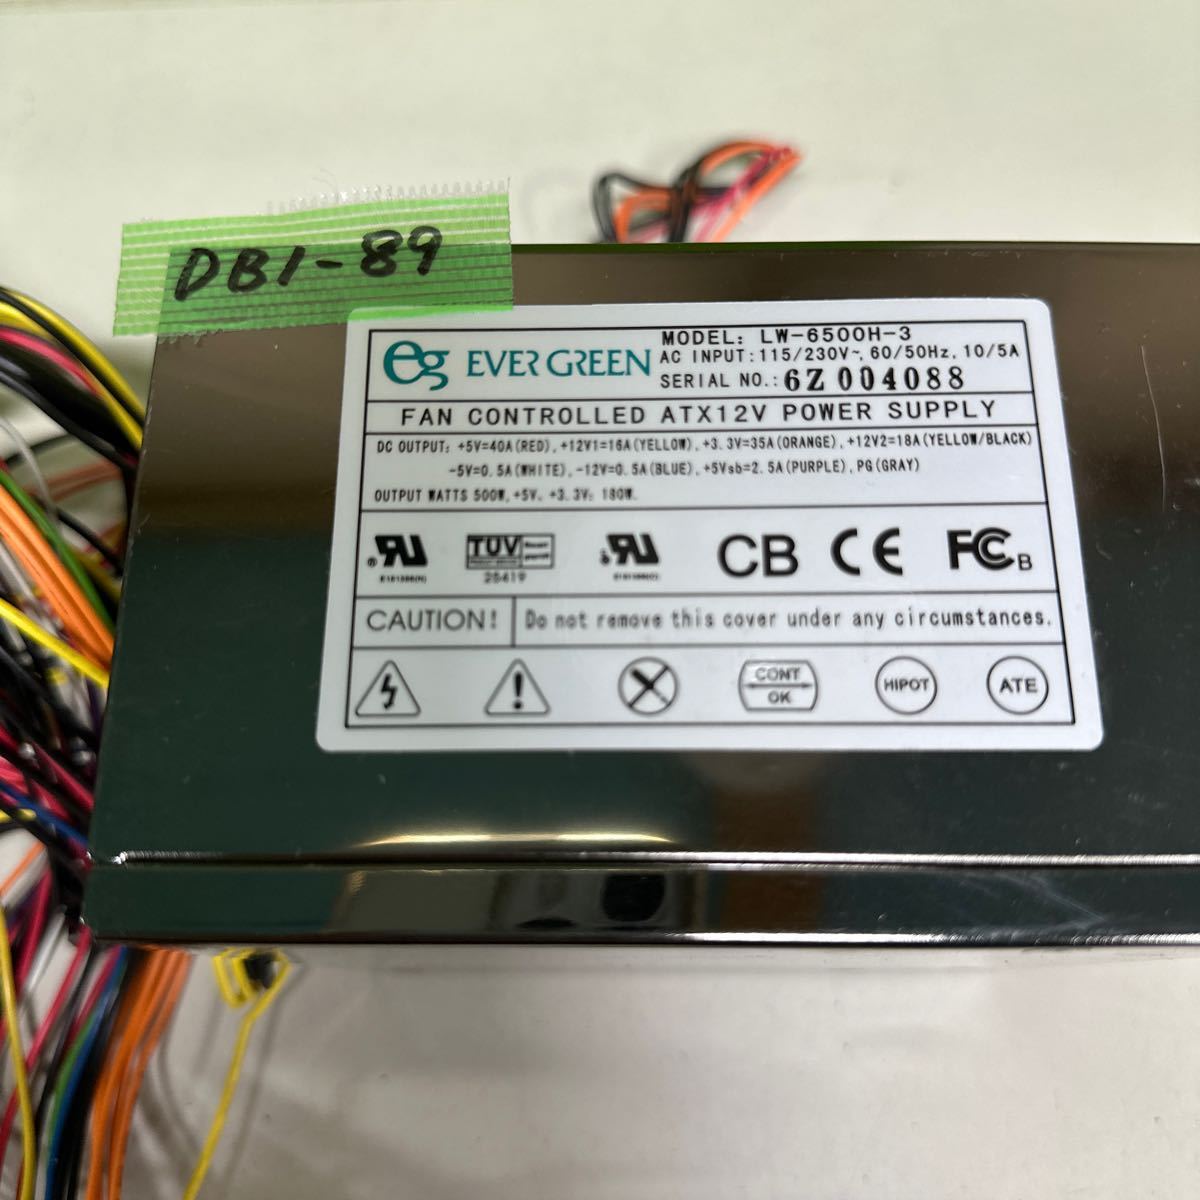 DB1-89 激安 PC 電源BOX EVER GREEN LW-6500H-3 500W 電源ユニット 電源テスターにて電圧確認済み　中古品_画像2